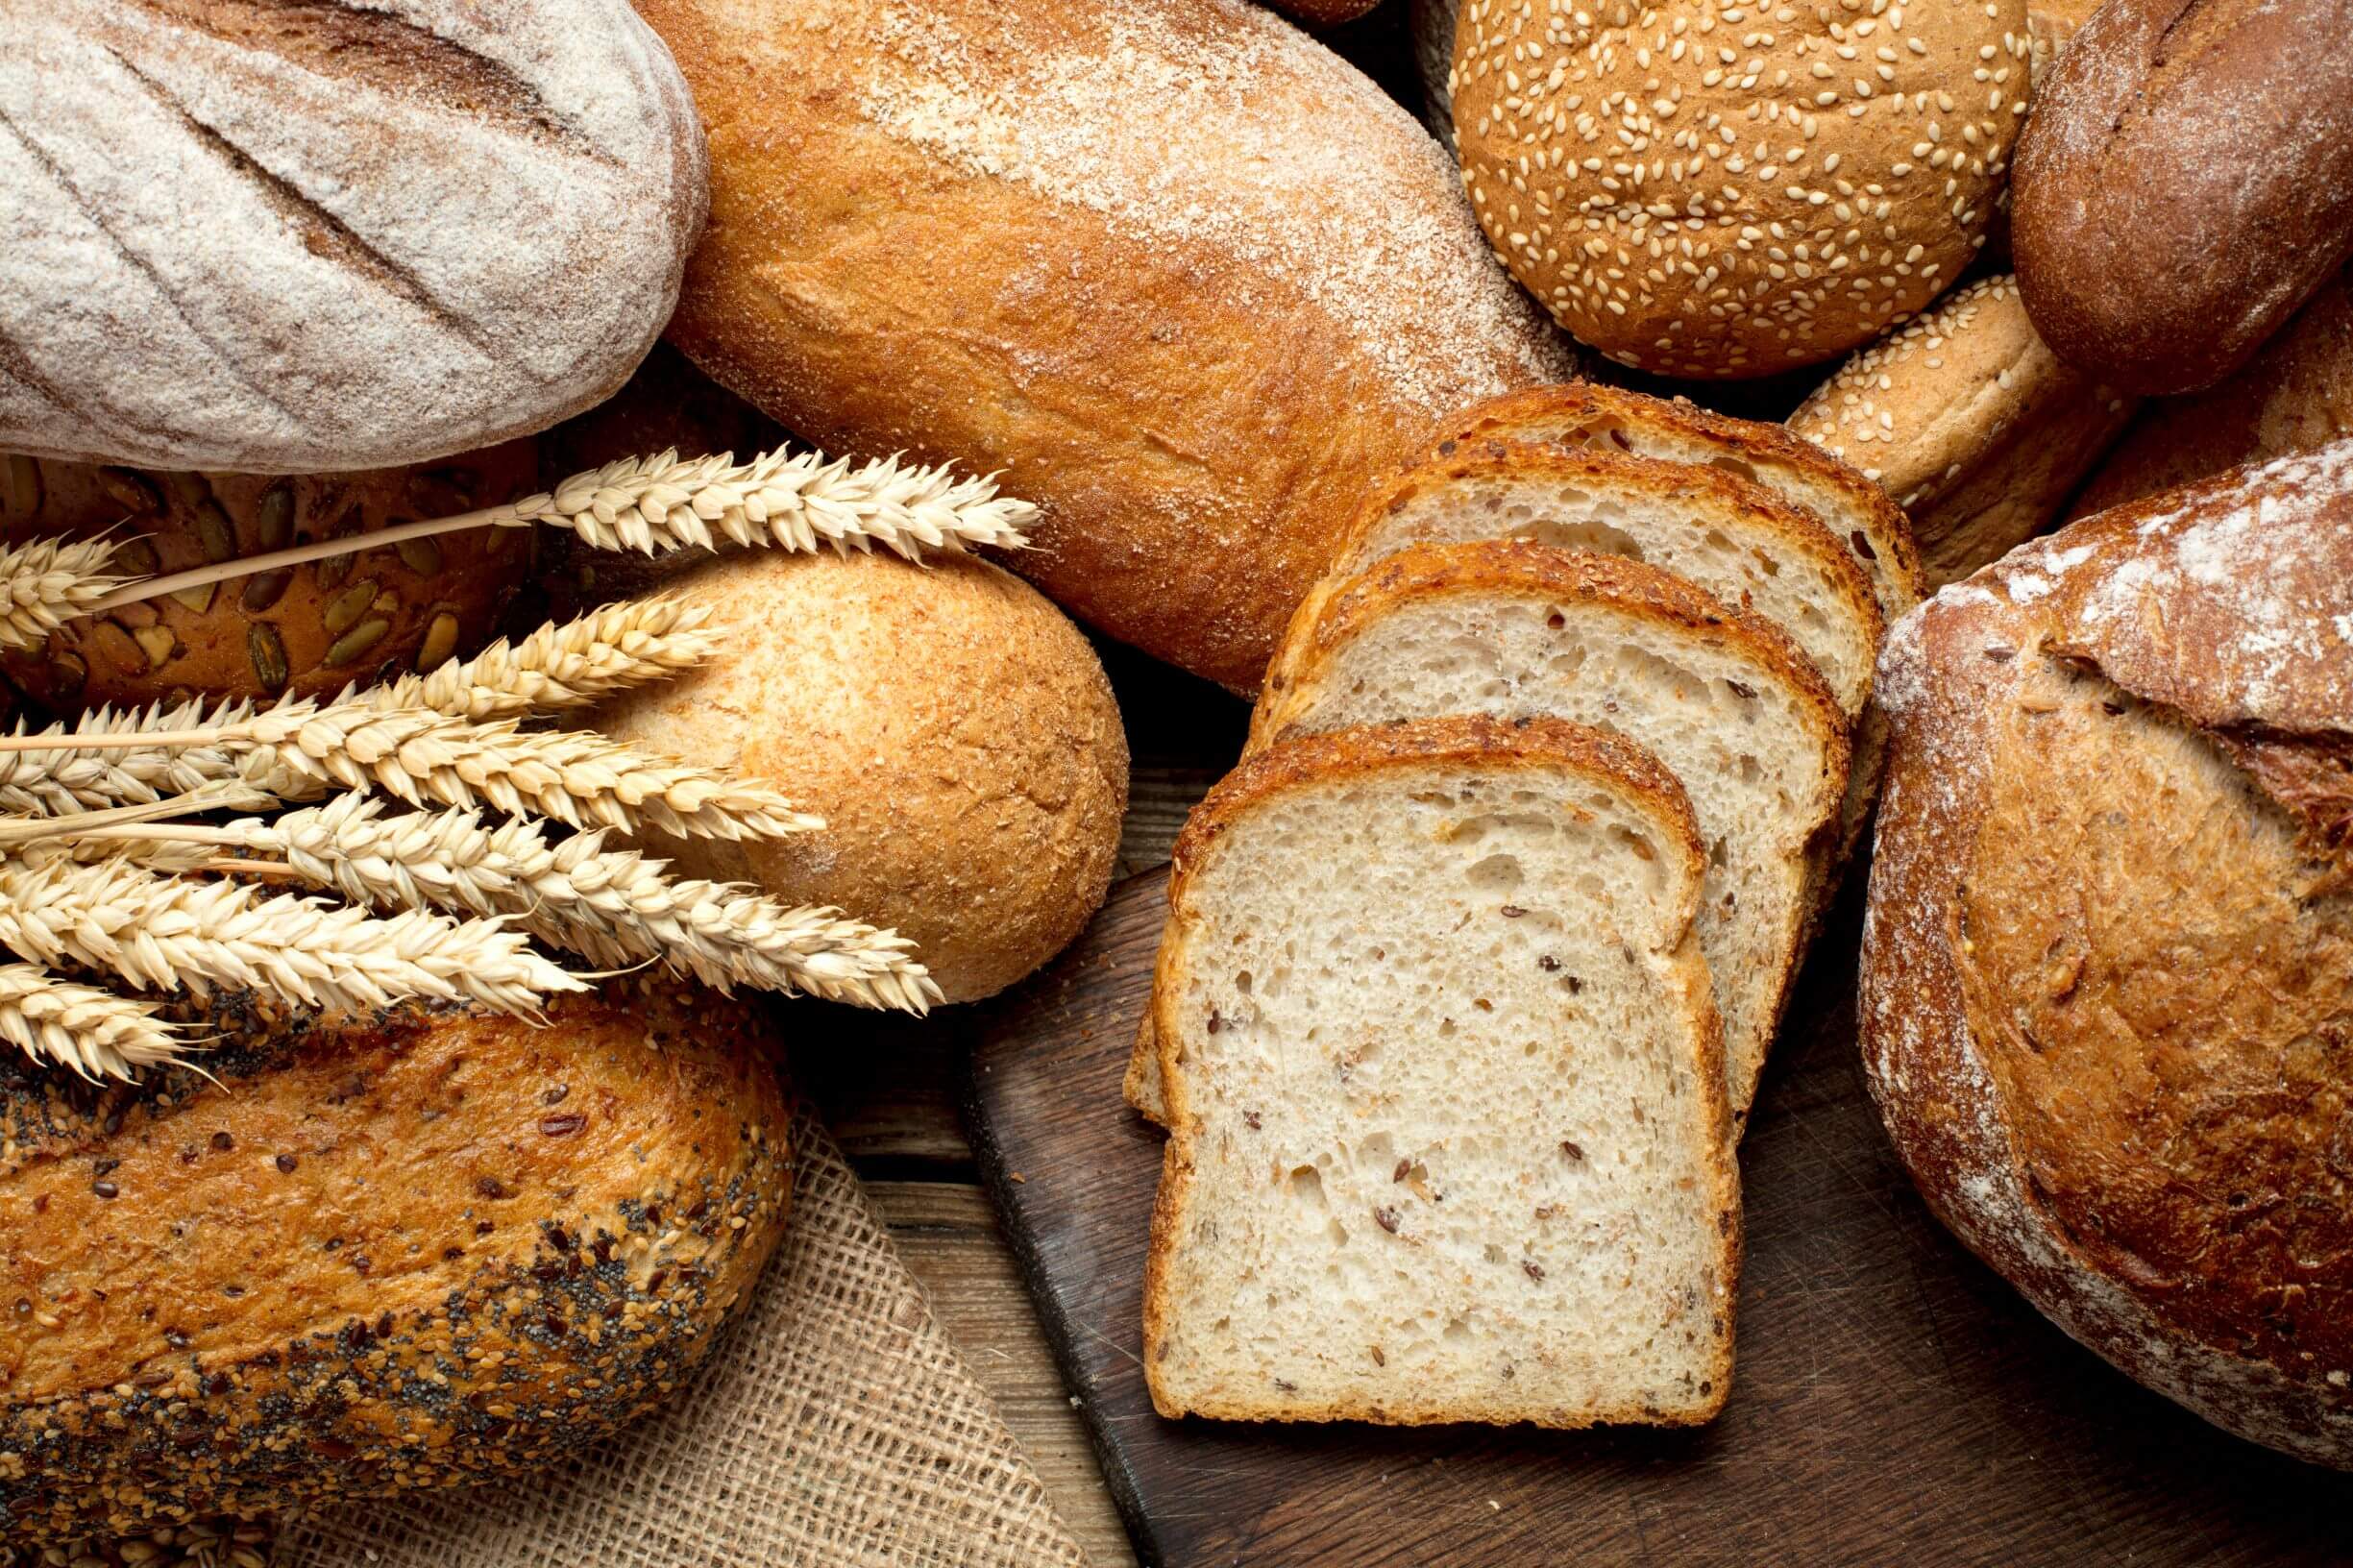 Various types of artisan breads